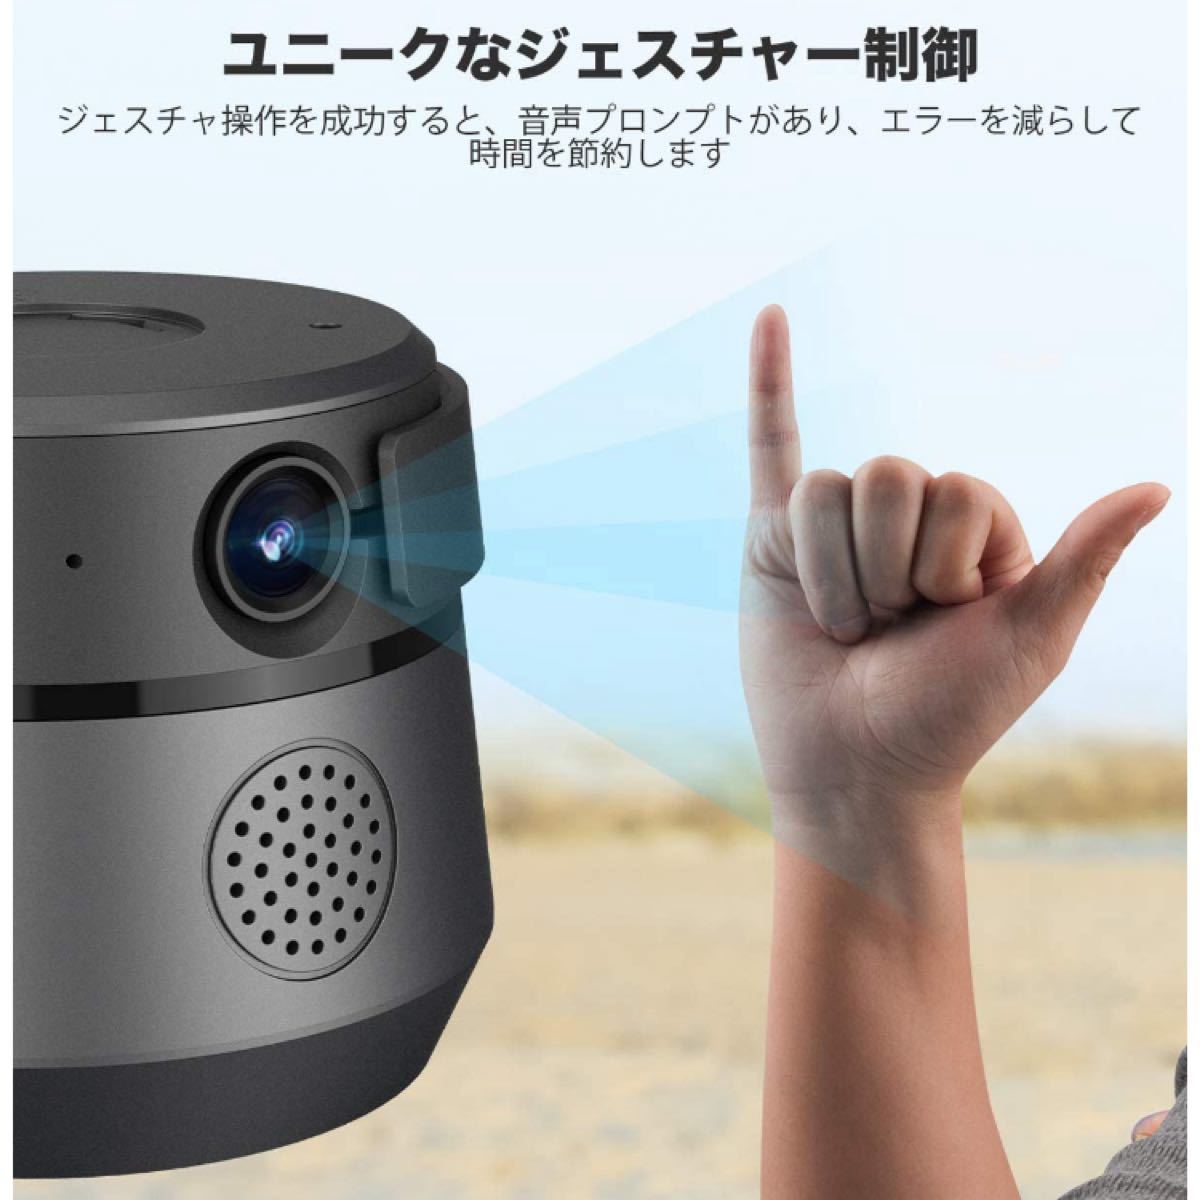 2021最新版 自動顔追跡ウェブカメラ HD1080P 200万画素 120°広角 高画質 内蔵マイク自動顔追